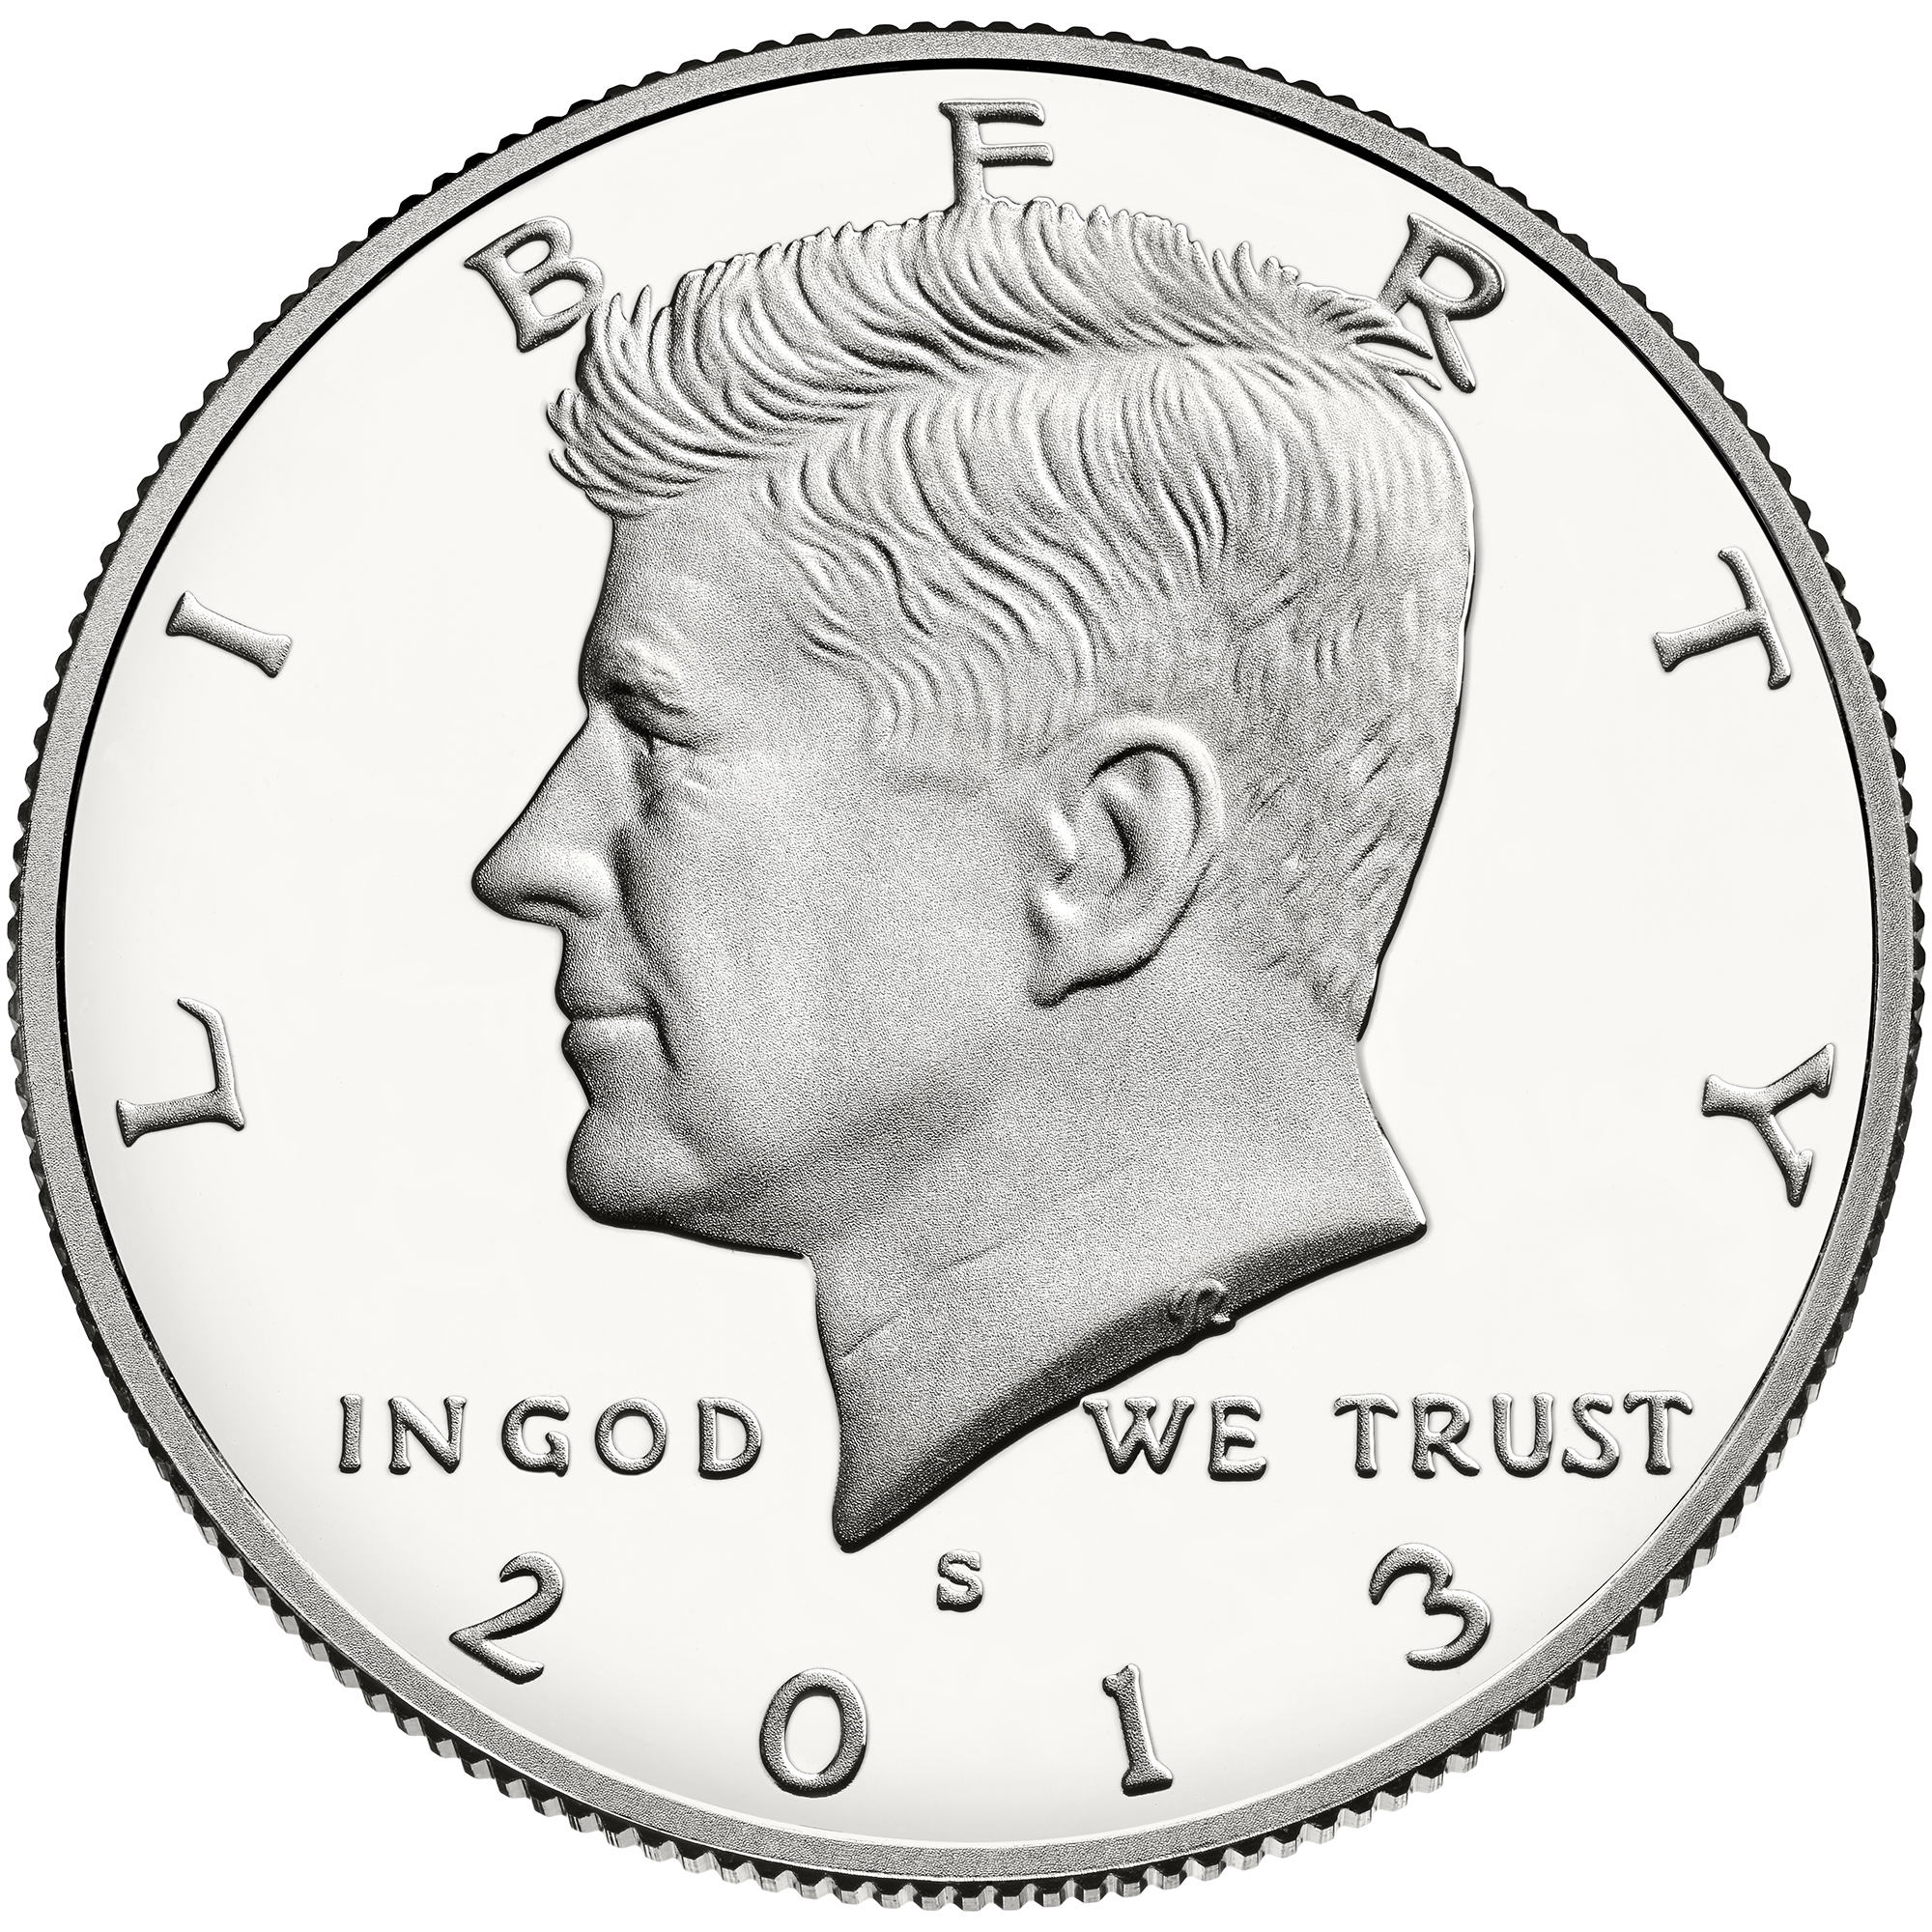 US 1/2 Dollar - Half Dollar 1981 S